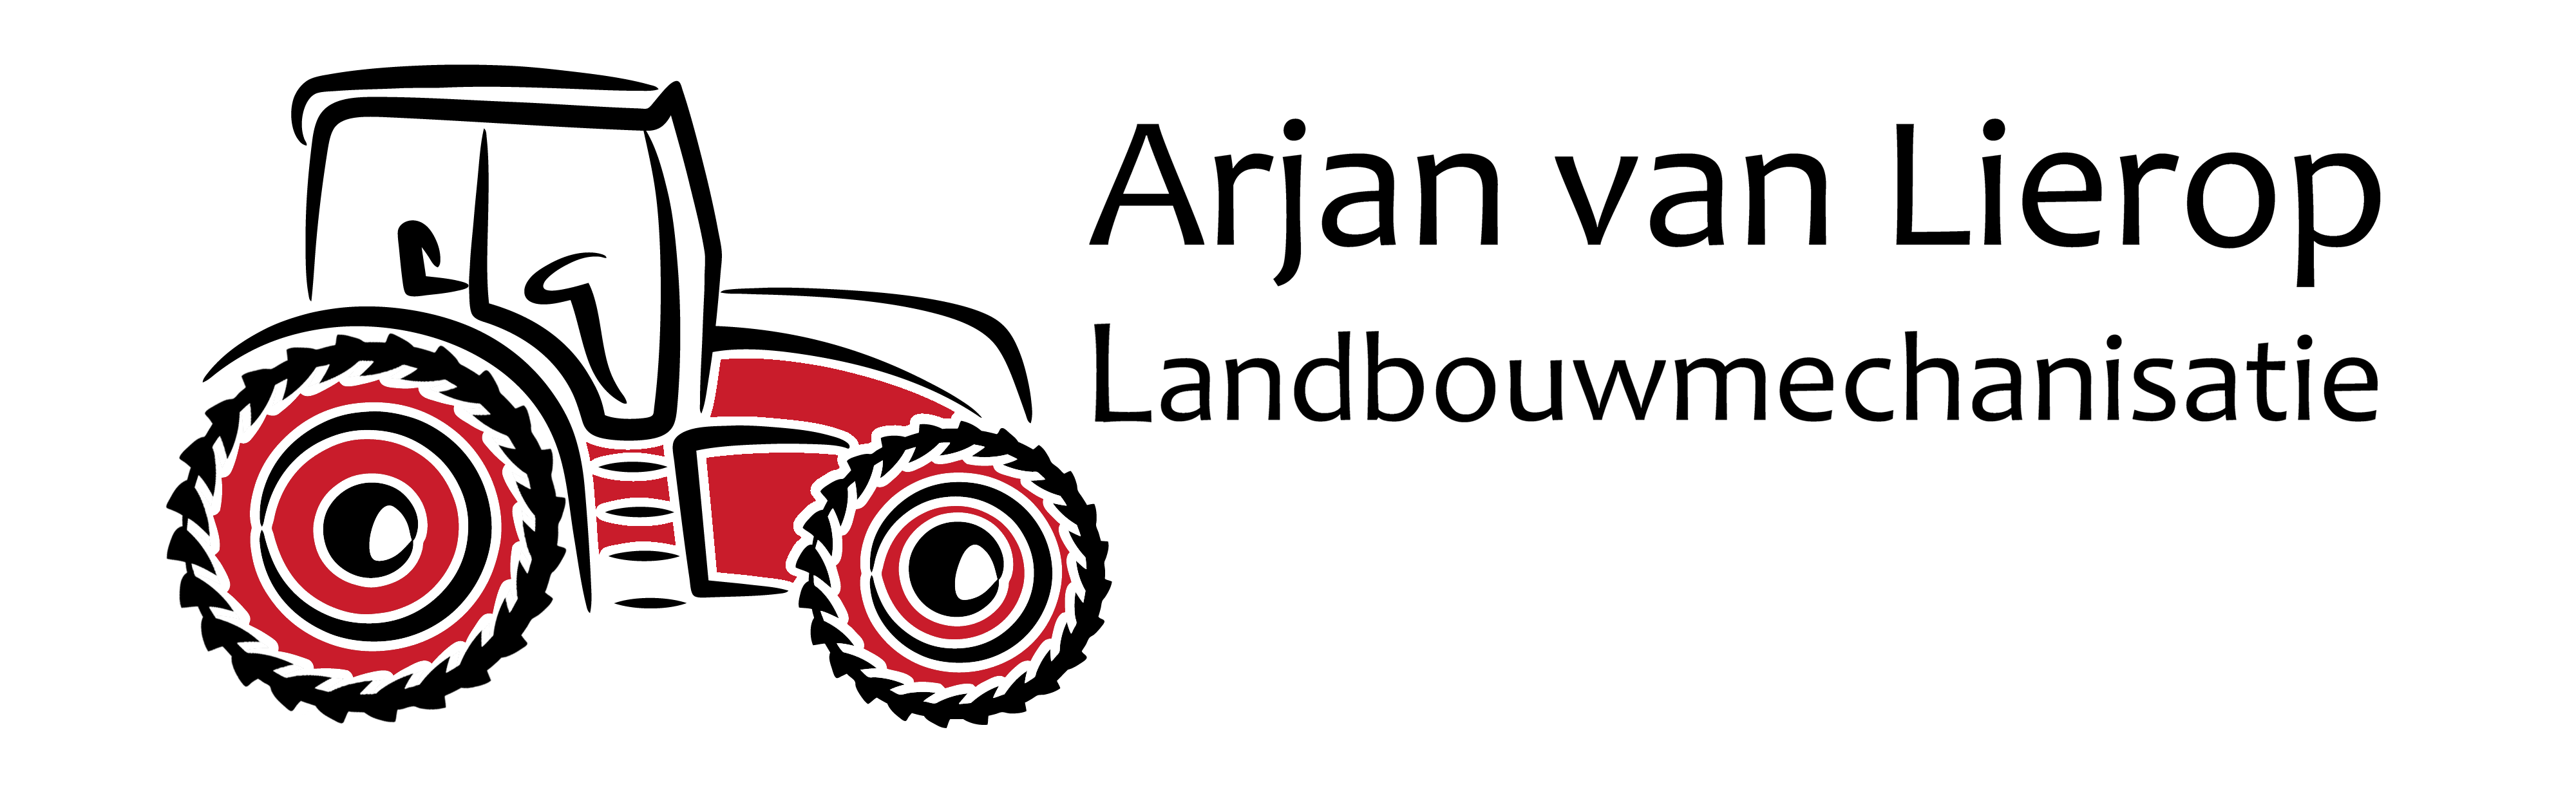 Logo Arjan van Lierop Landbouwmechanisatie